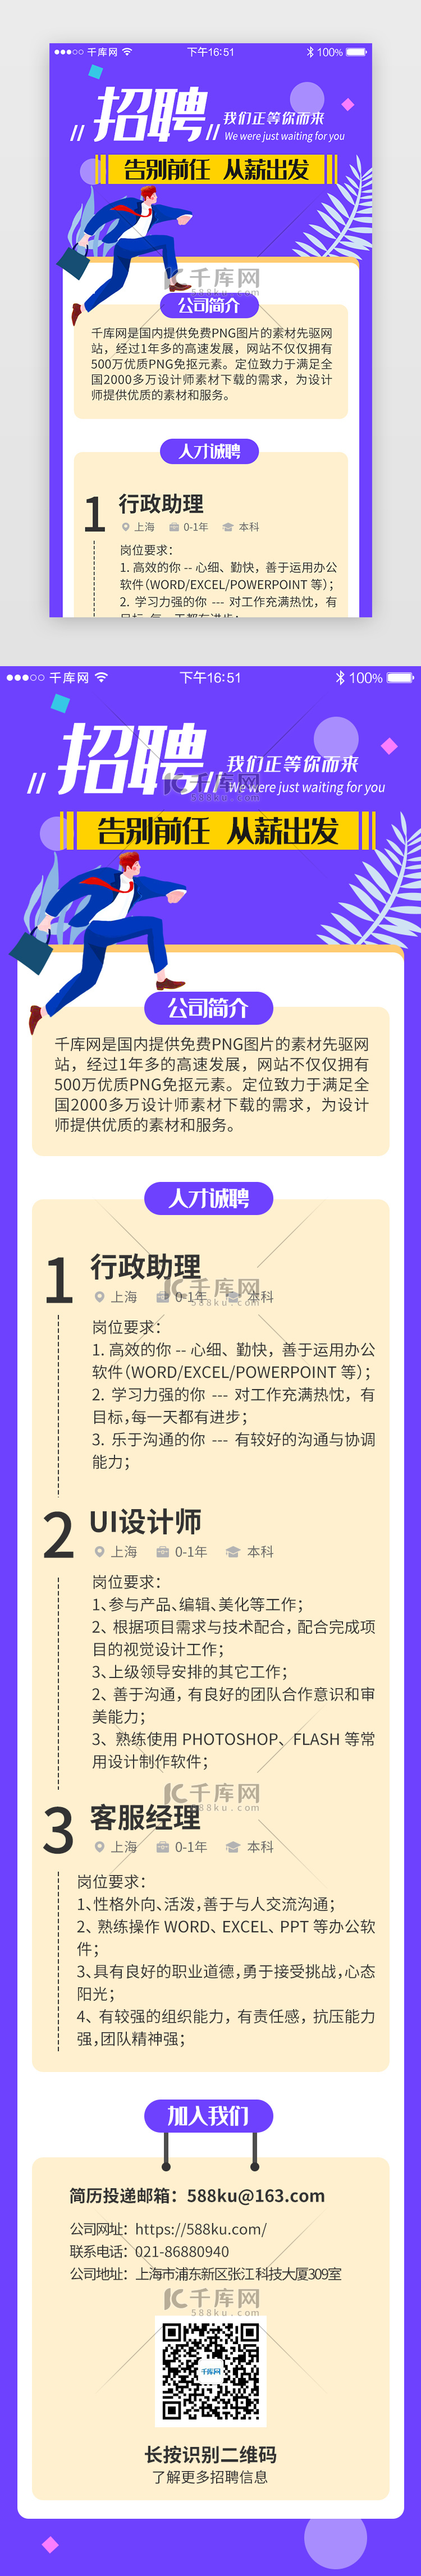 蓝紫色系app招聘求职H5